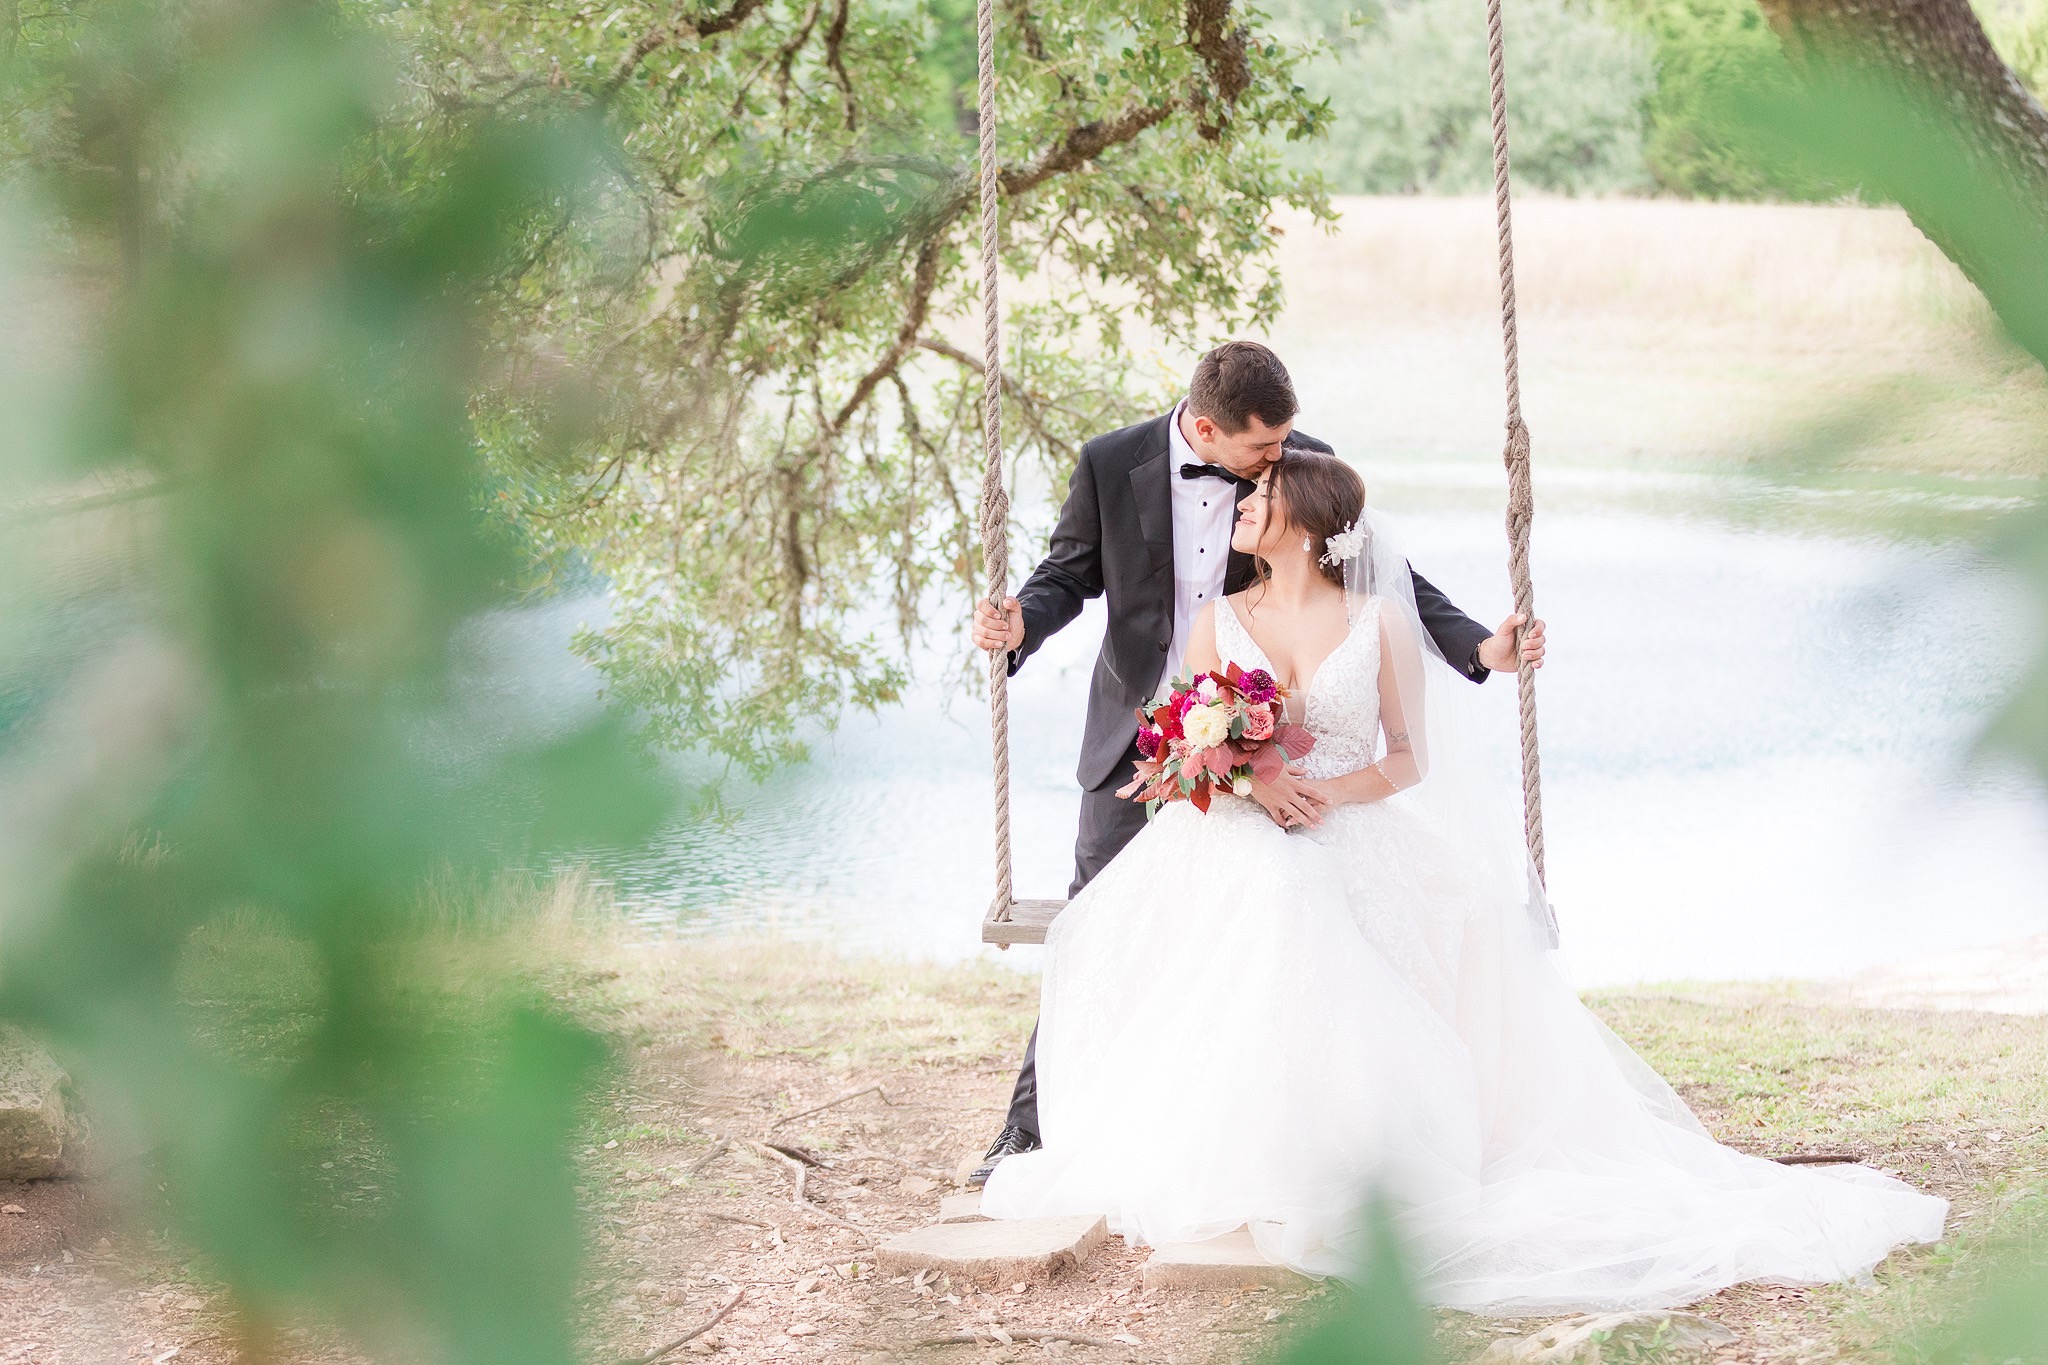 A Rust & Mocha Wedding at St. Josephs Honeycreek and Kendall Point in Boerne, TX by Dawn Elizabeth Studios, San Antonio Wedding Photographer